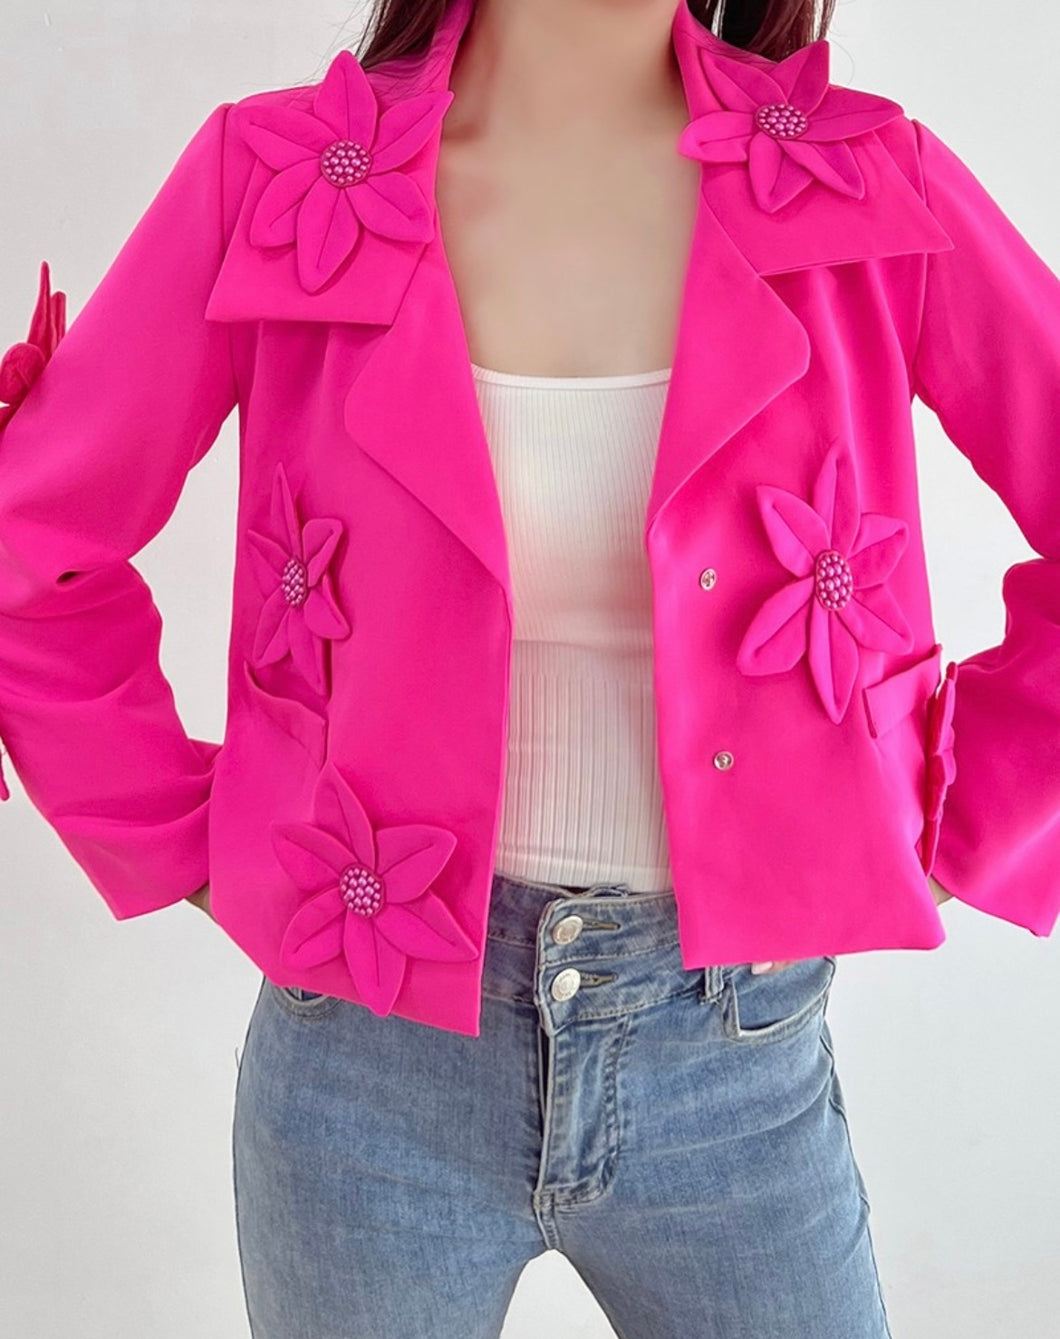 Hot Pink Flower Cropped Blazer